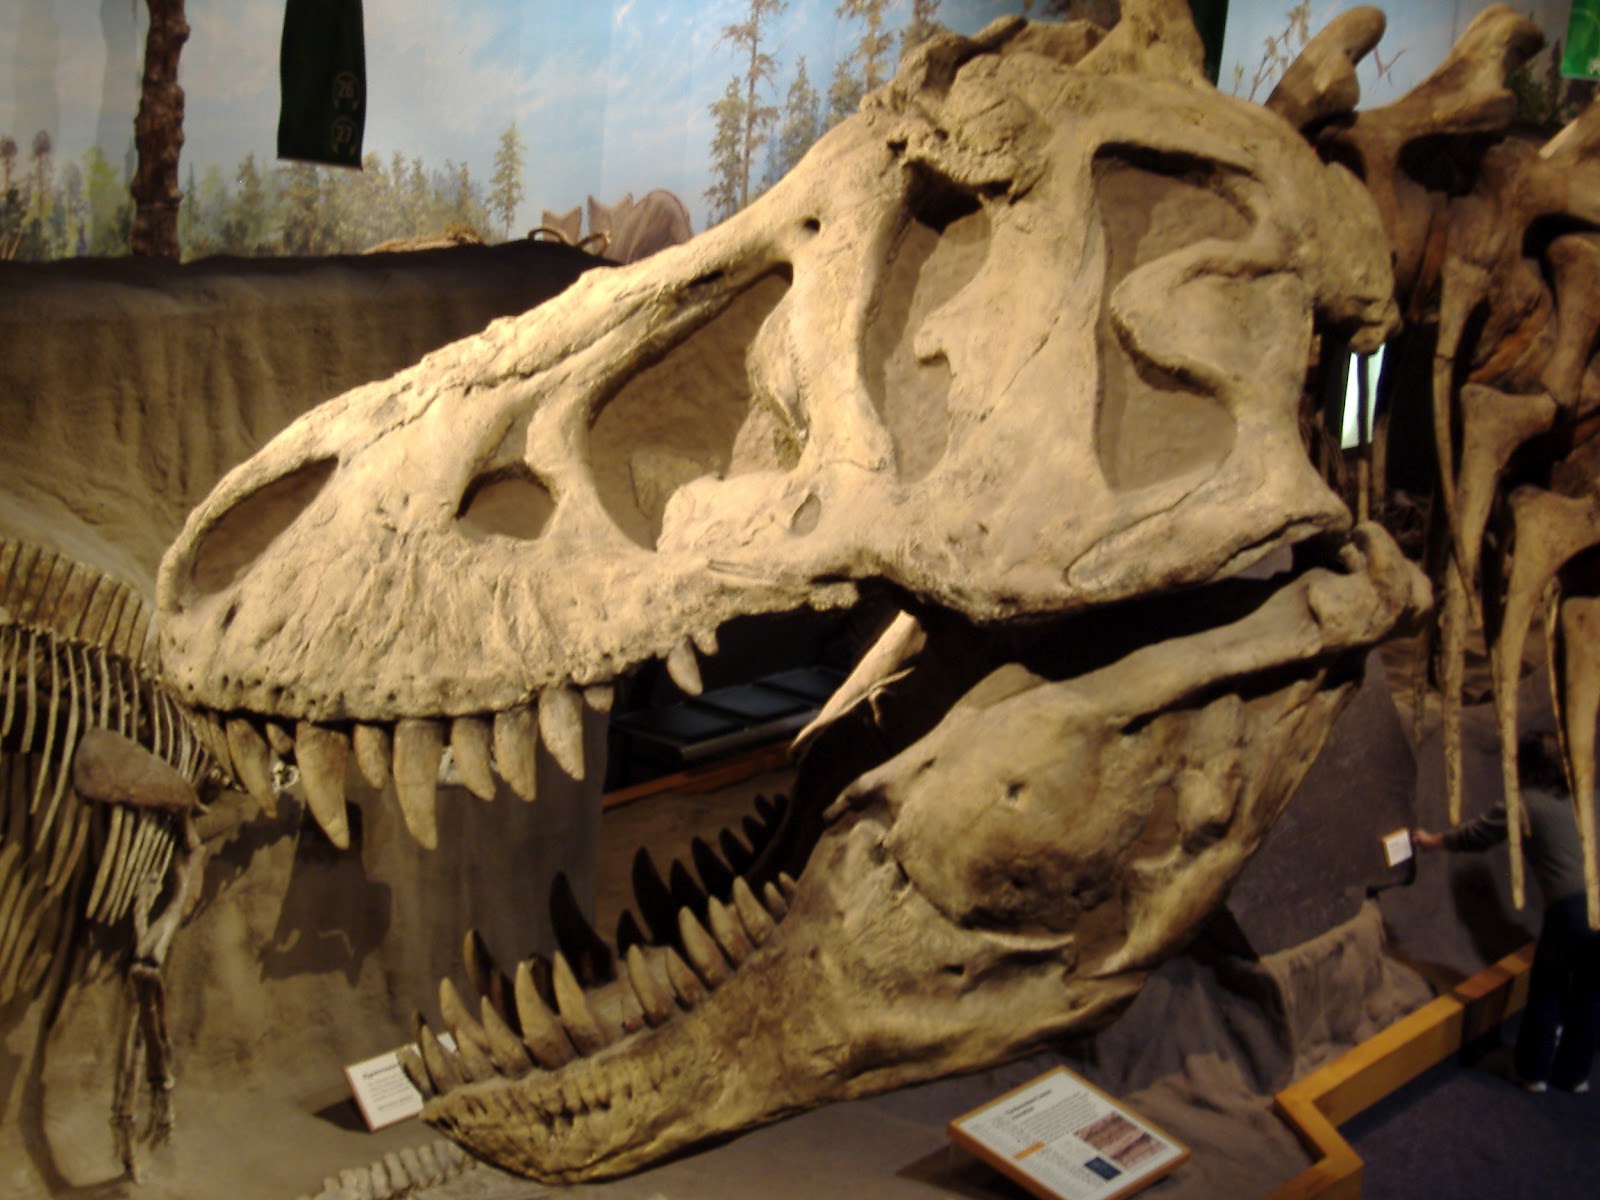 Pseudoplocephalus Thoughts On Tarbosaurus Part 2